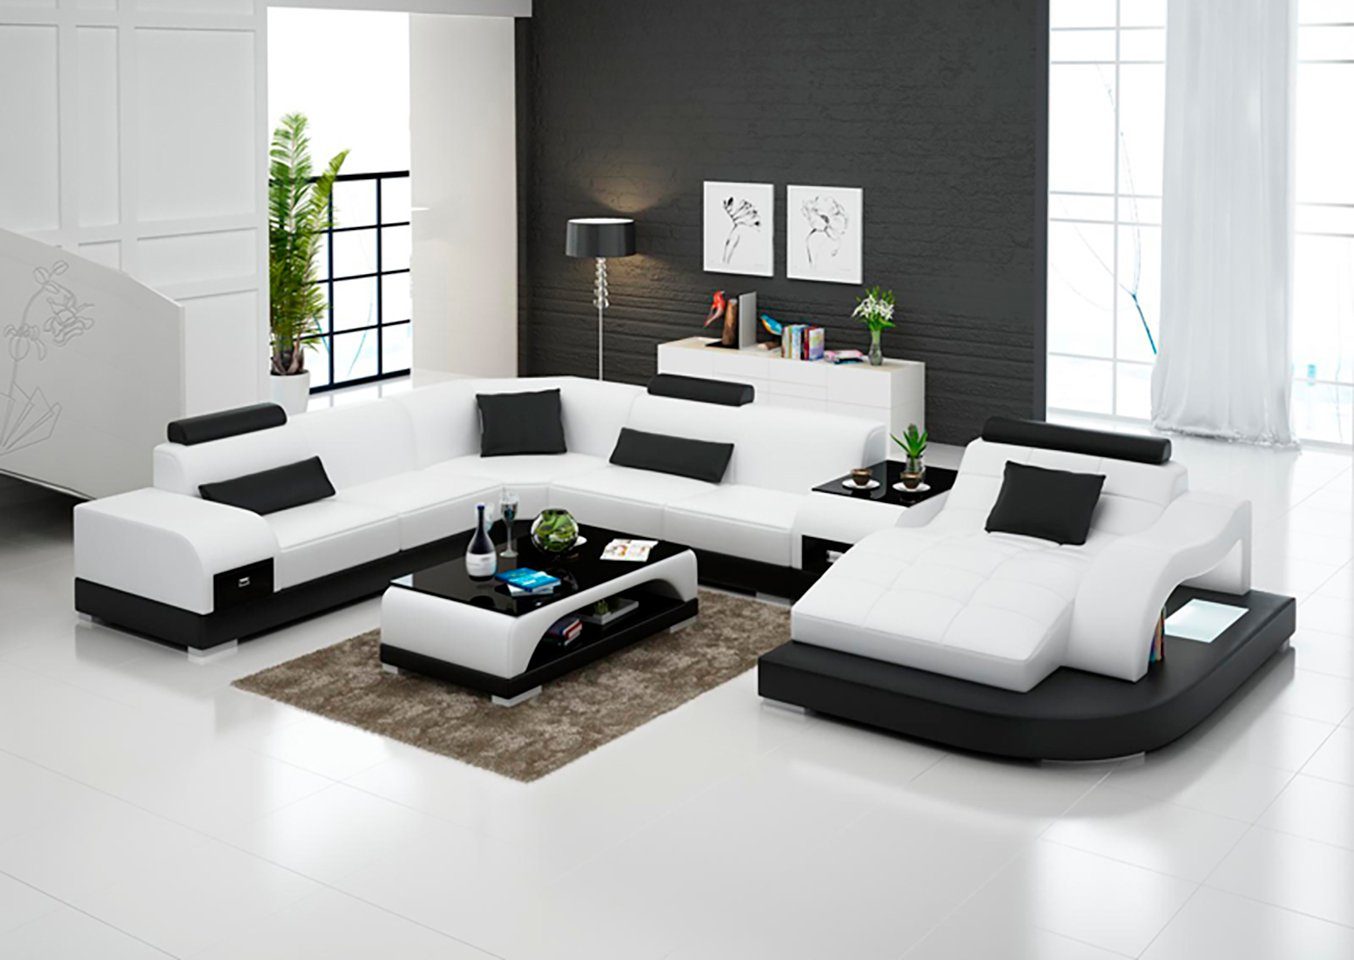 JVmoebel Ecksofa, Leder Eck Sofa Eck Wohnlandschaft Design Modern Couch  Sofas UForm